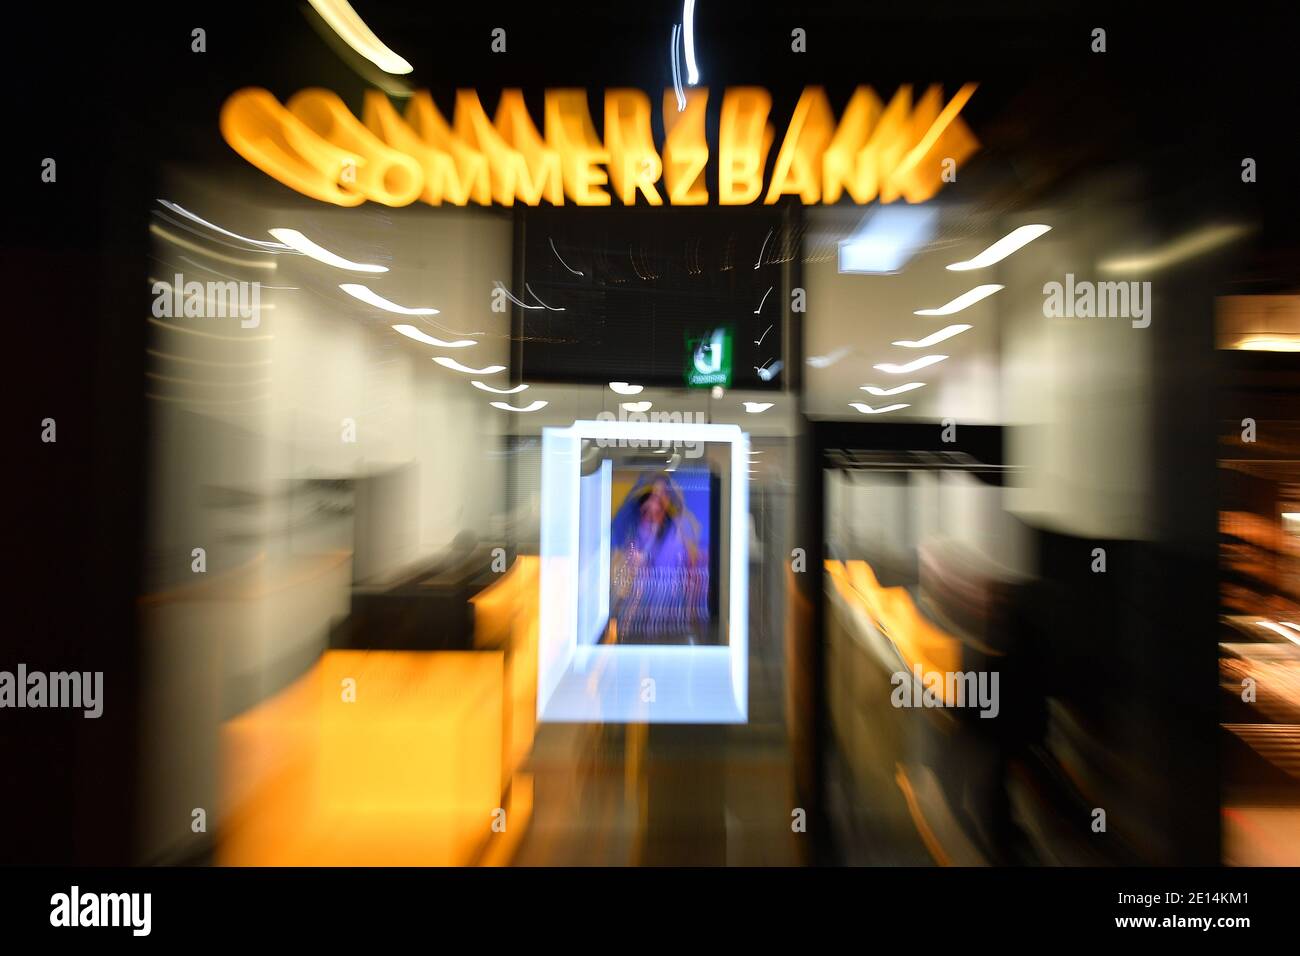 Monaco, Germania. 26 Nov 2020. Chiuso COMMERZBANK filiale in serata, ingresso, afterts.Banken | utilizzo nel mondo Credit: dpa/Alamy Live News Foto Stock